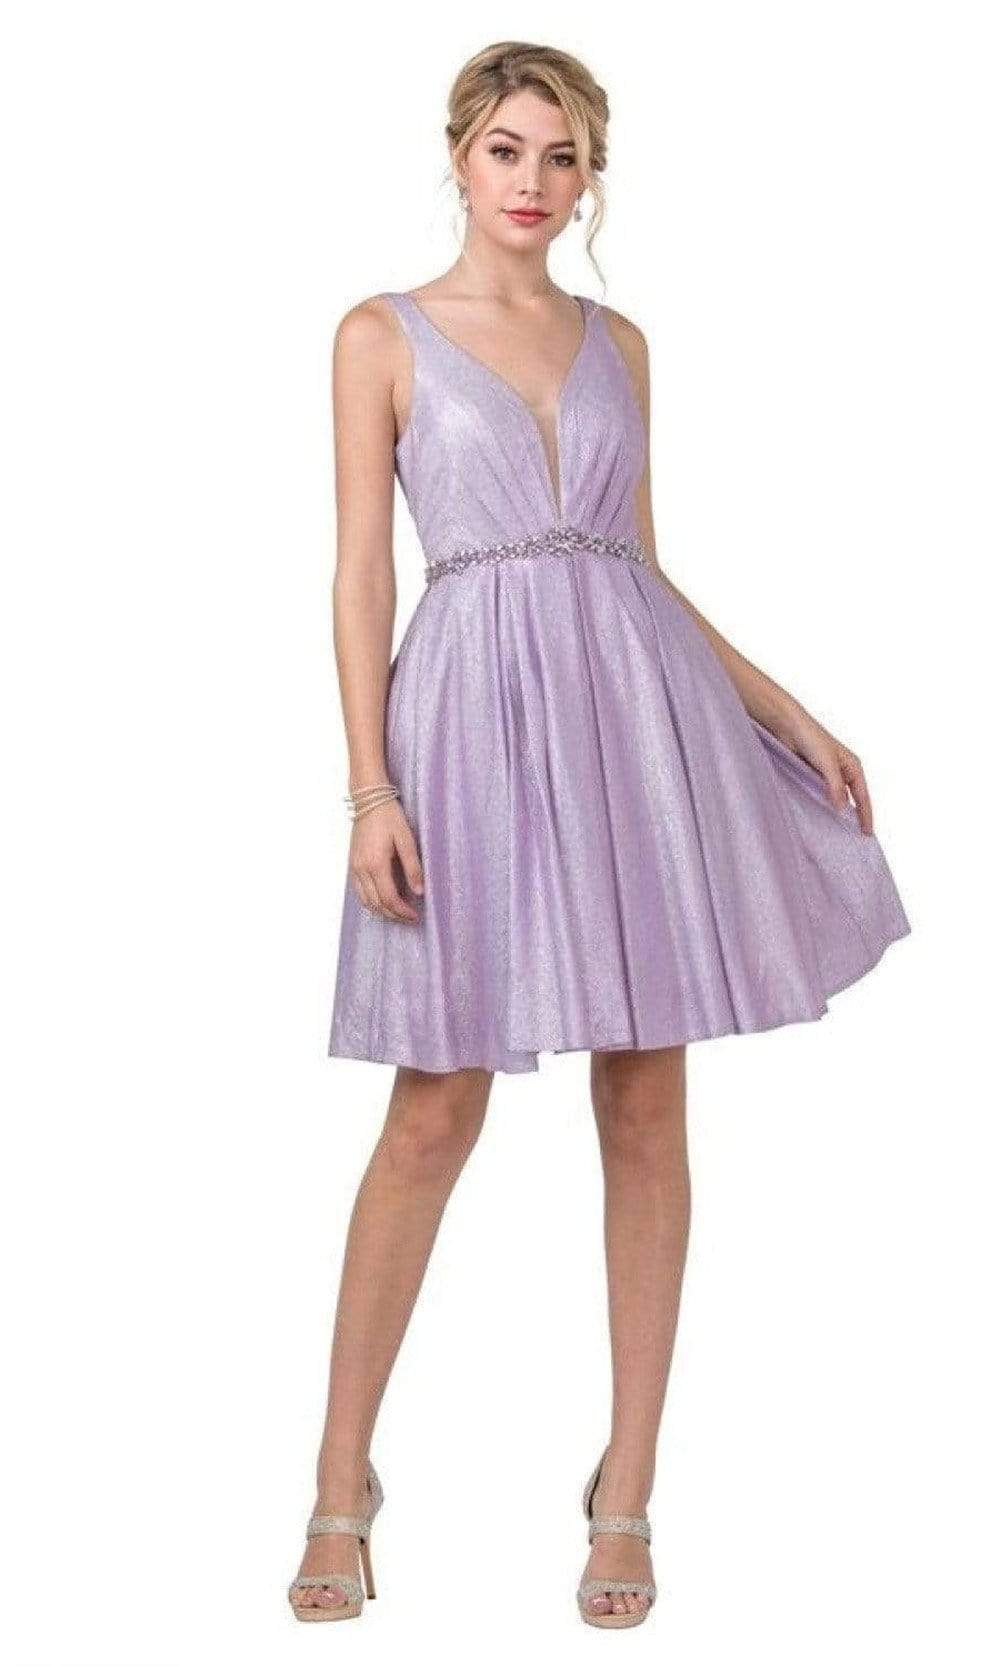 Aspeed Design - S2337 Sleeveless Beaded Waist A-Line Dress
